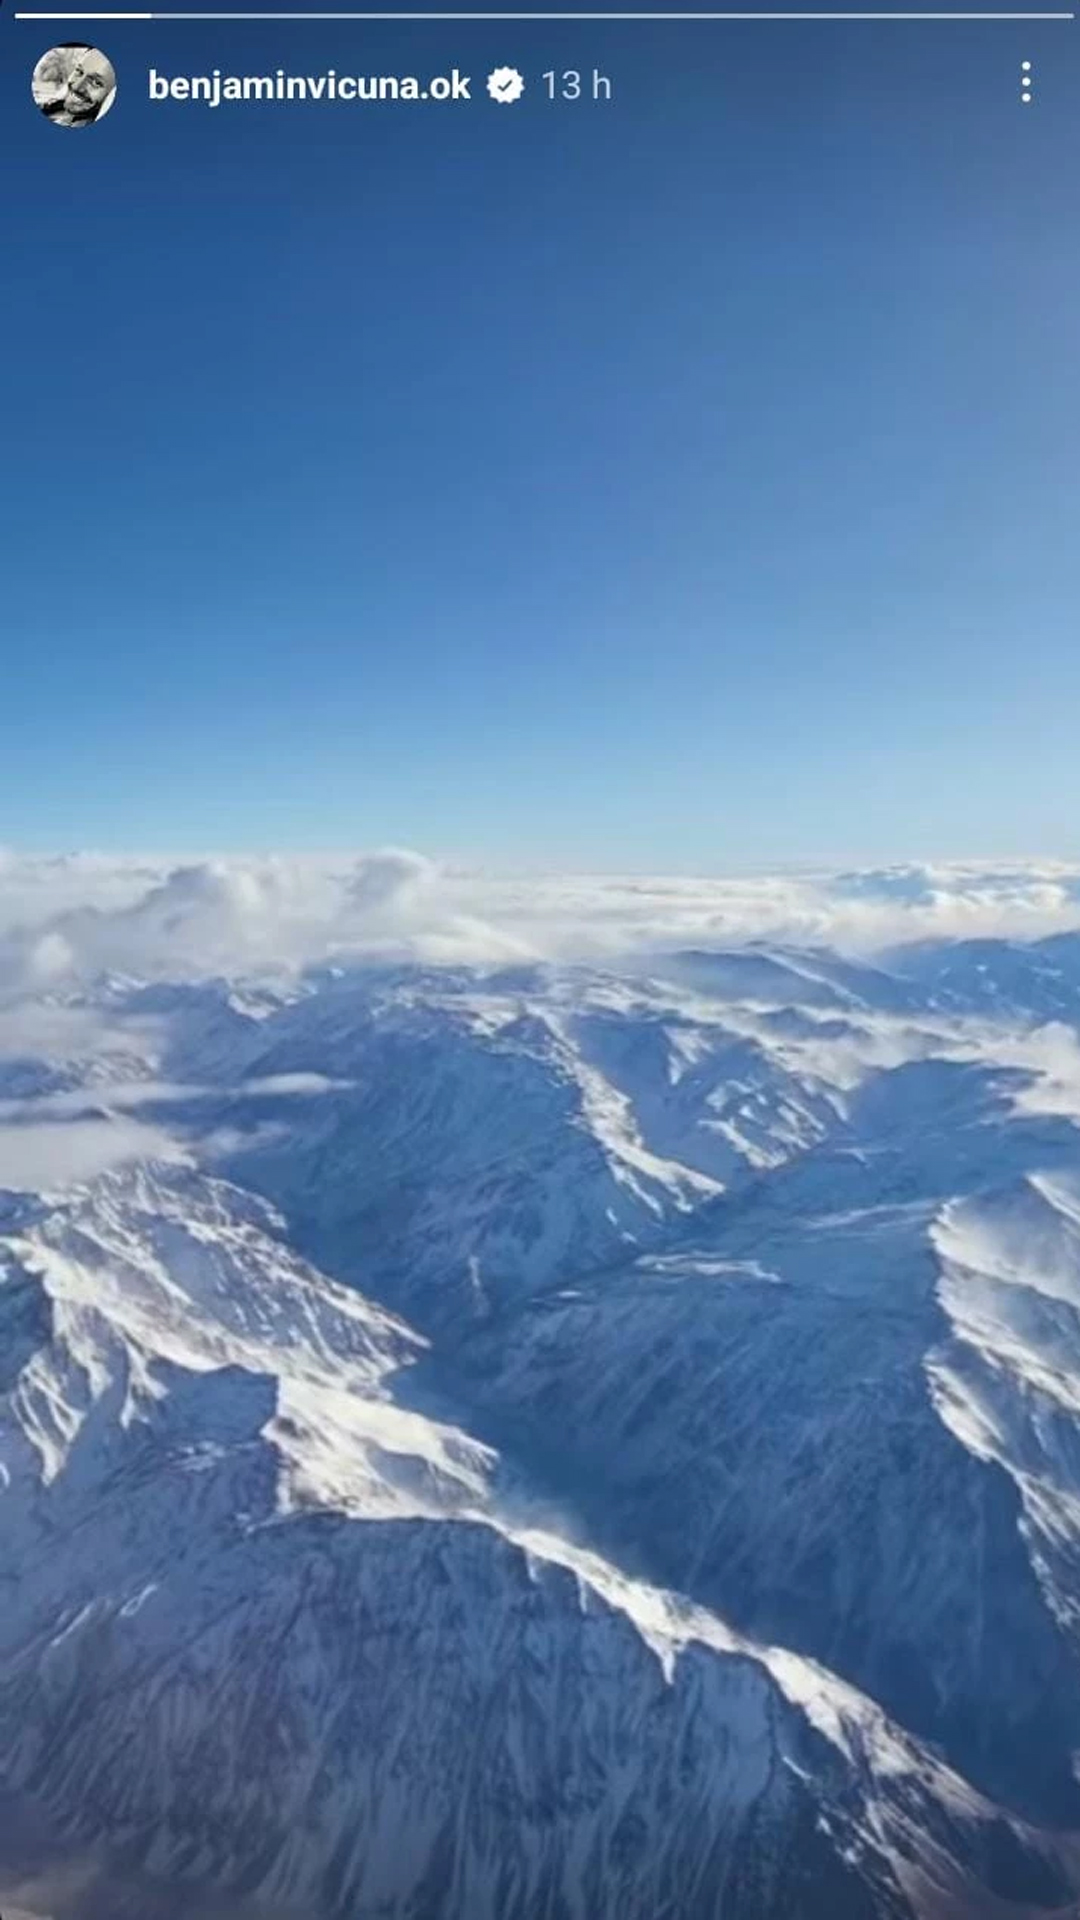 El actor chileno compartió imágenes desde el avión durante su vuelo a Chile en las últimas horas